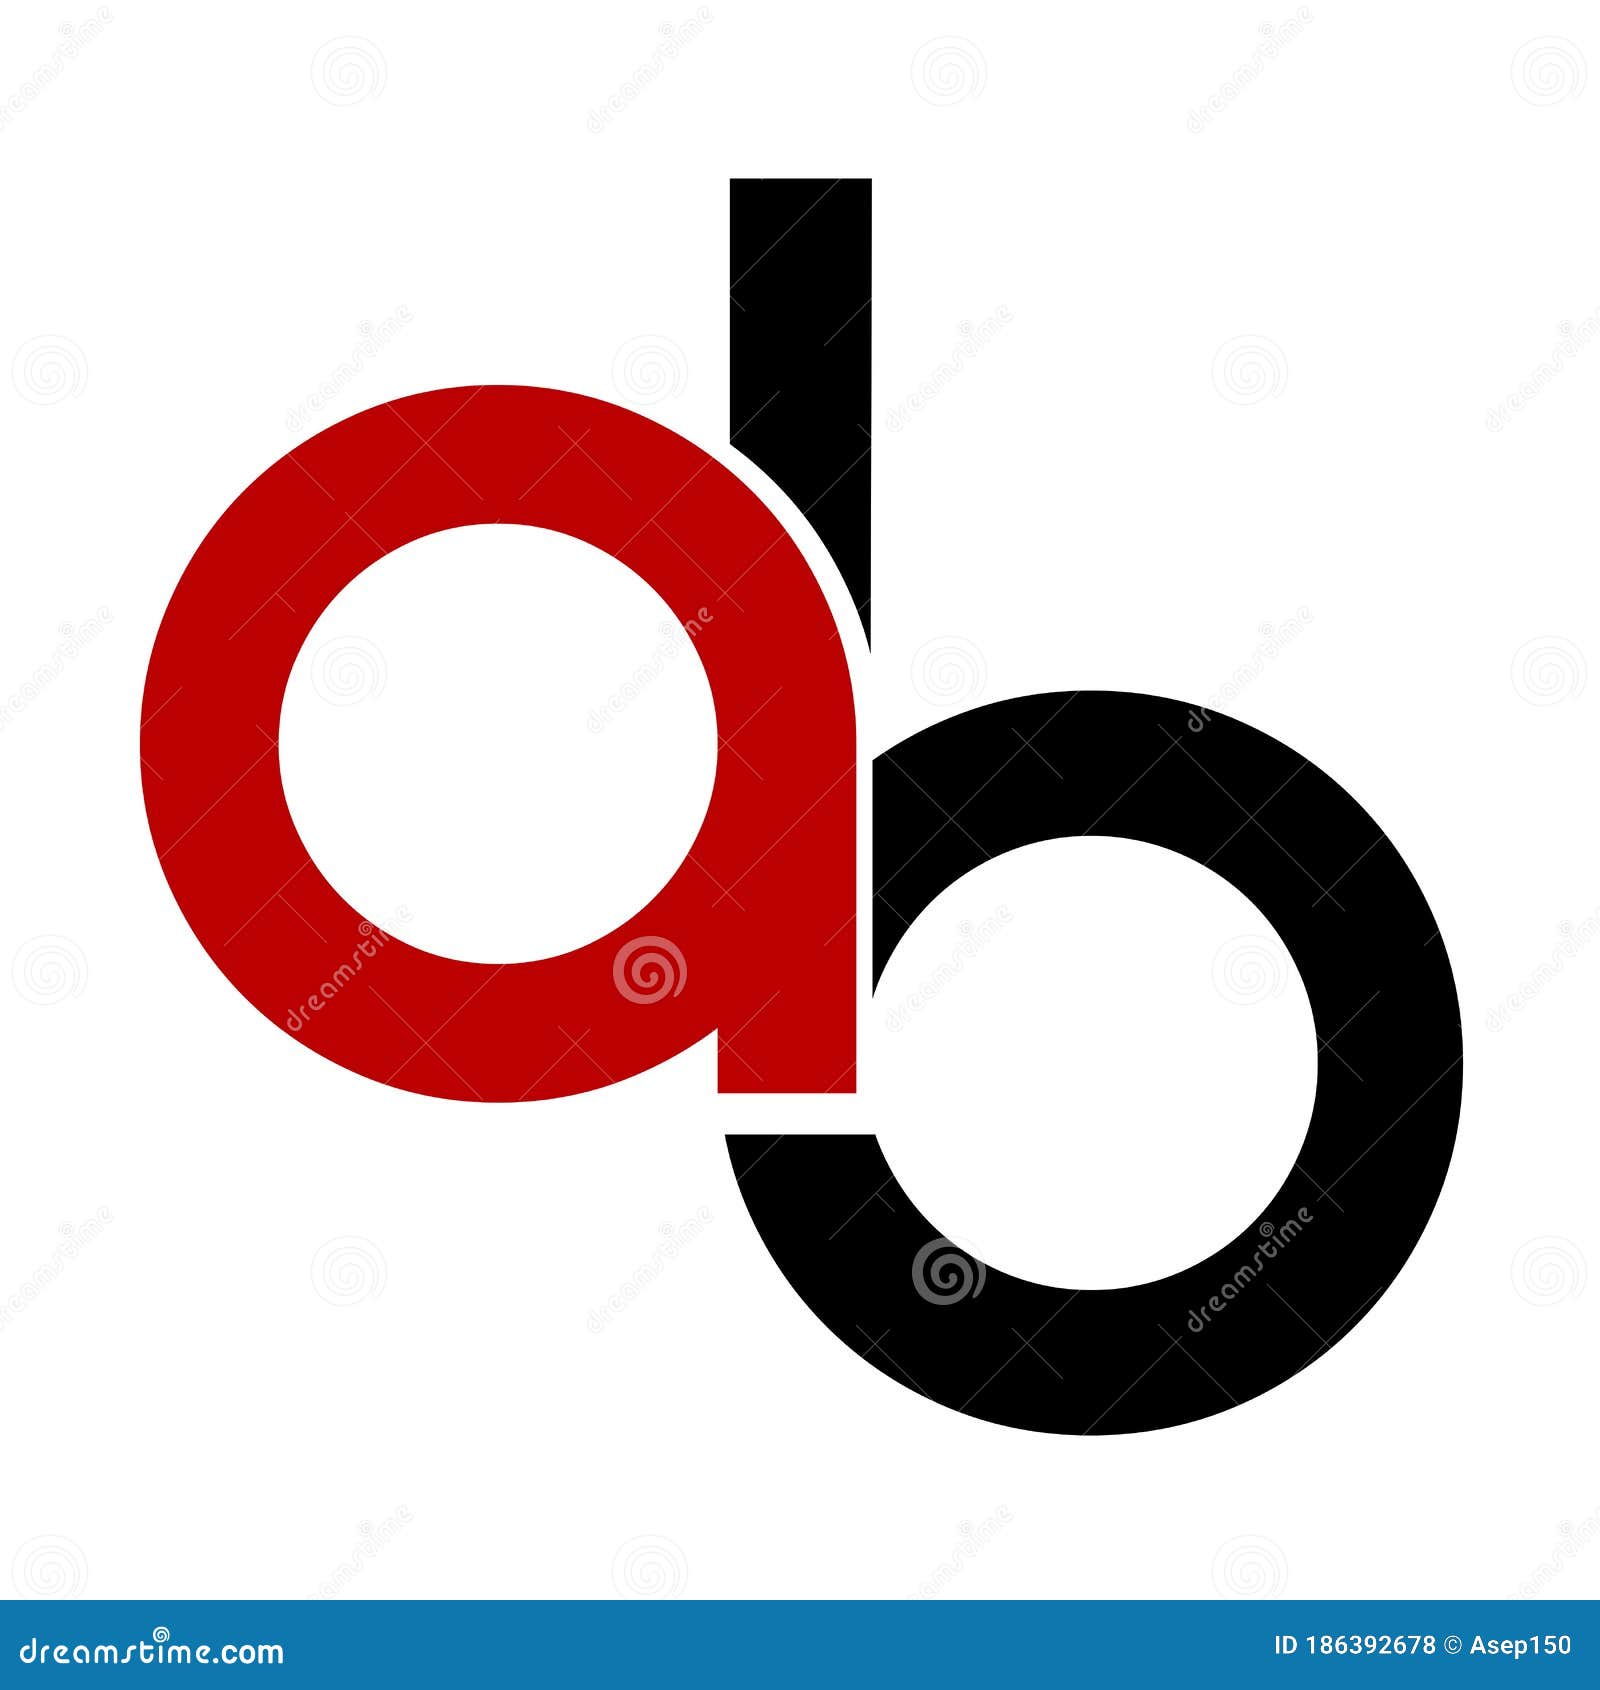 ab, iab, aib initials geometric logo and icon